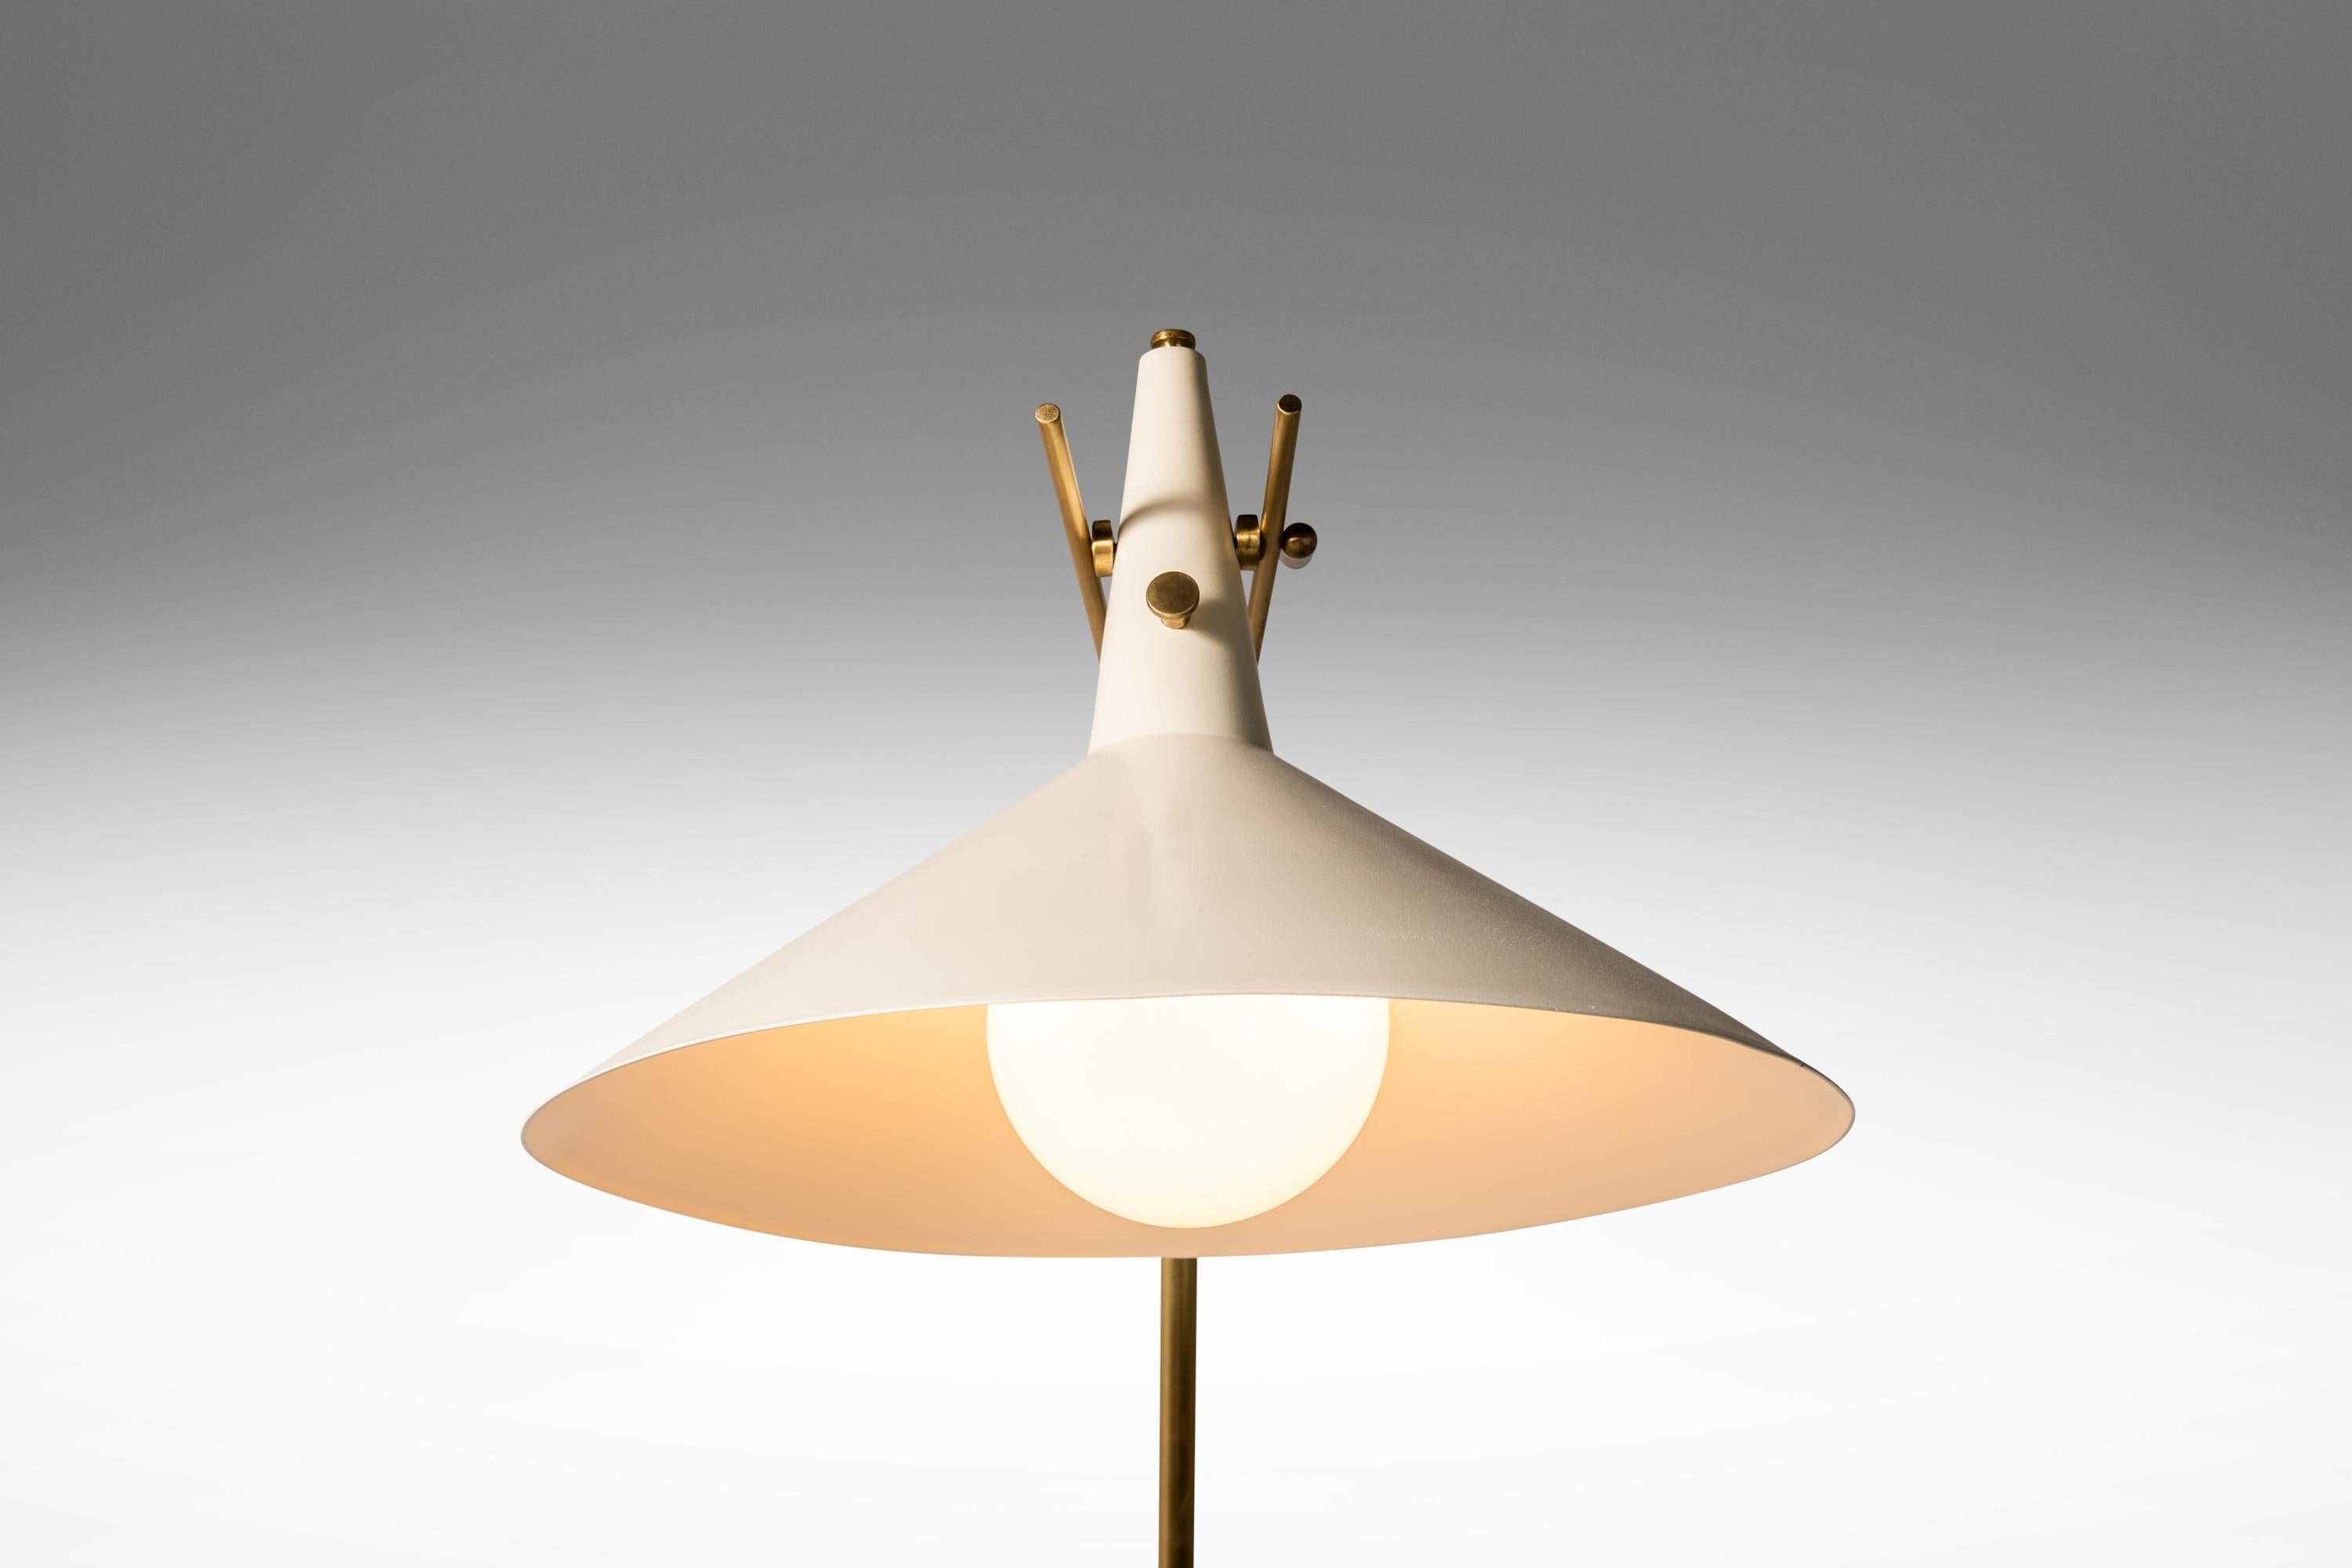  Wir präsentieren ein einzigartiges, luxuriöses Möbelstück aus dem zwanzigsten Jahrhundert - eine seltene Stehleuchte des Modells E-11, entworfen von Paul McCobb für Directional. Diese architektonisch beeindruckende Lampe ist ein wahres Kunstwerk